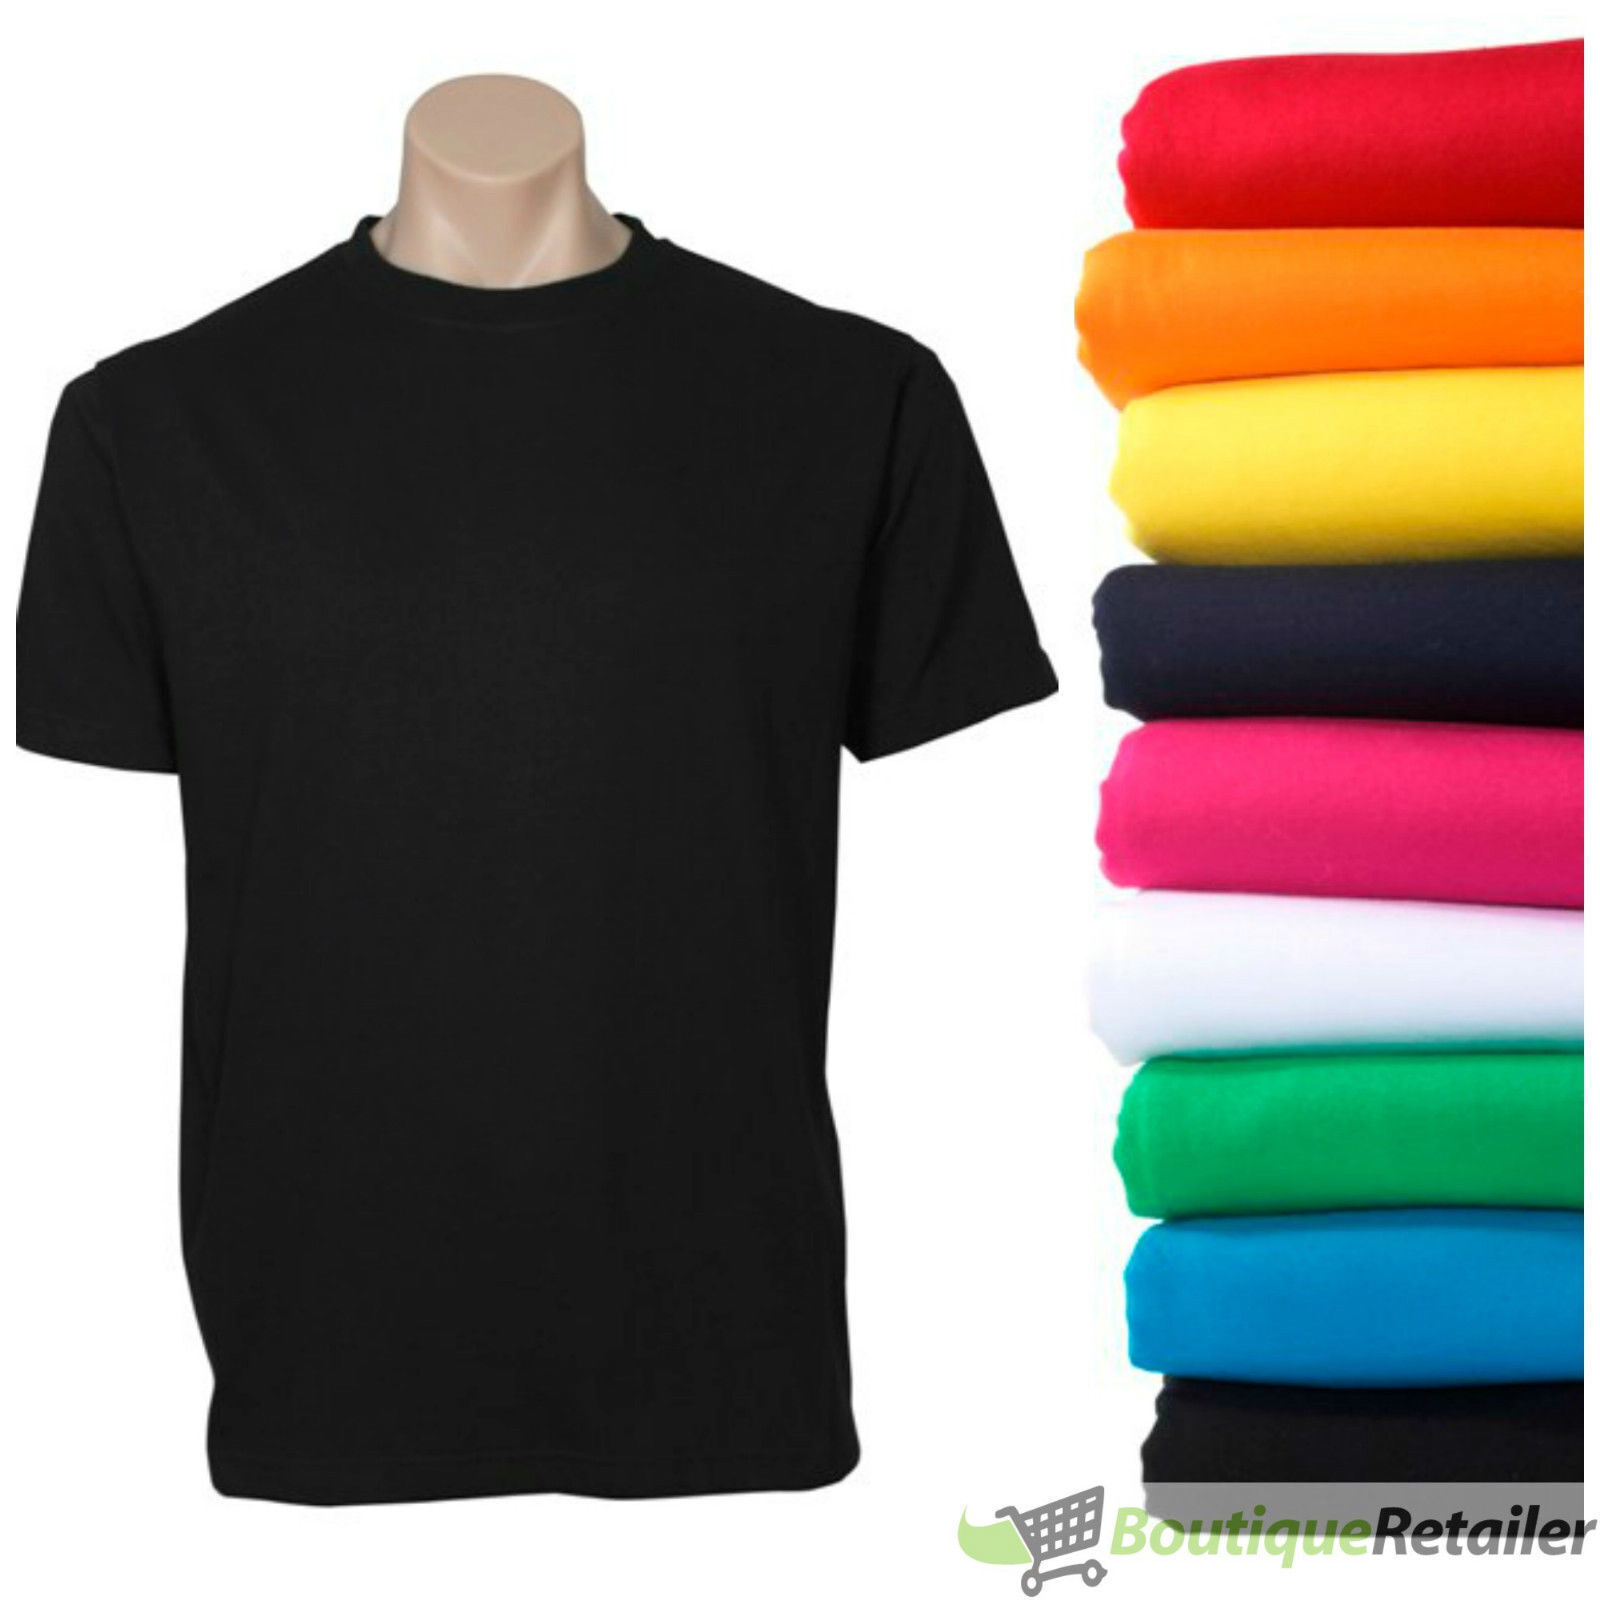 12x-bulk-plain-t-shirt-100-cotton-assorted-colours-s-xxl-men-s-women